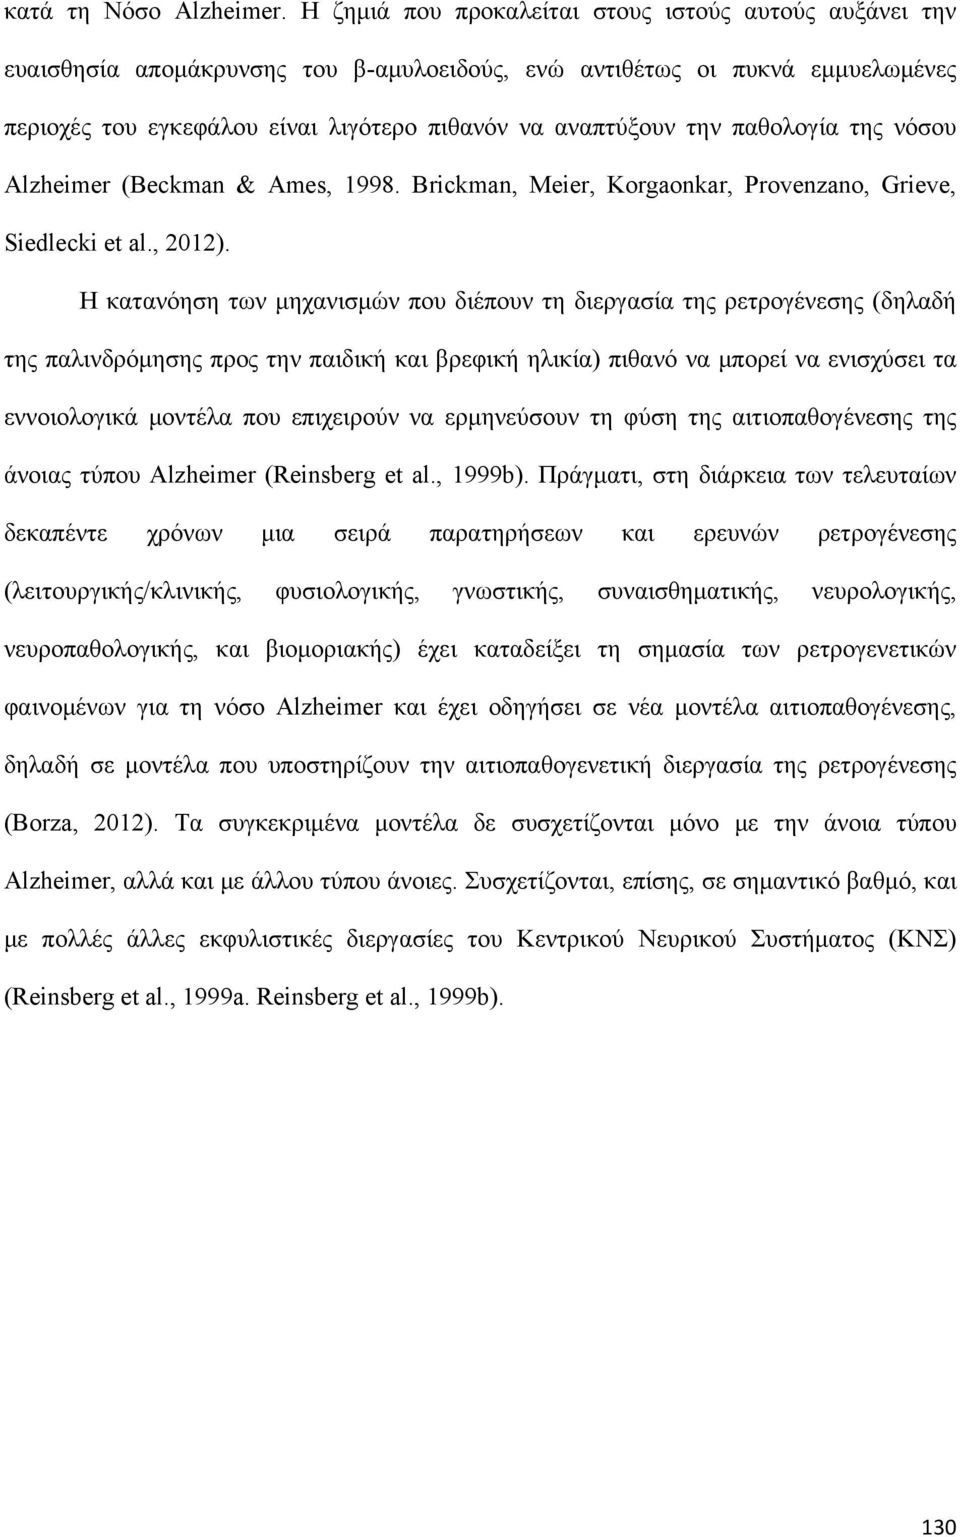 παθολογία της νόσου Alzheimer (Beckman & Ames, 1998. Brickman, Meier, Korgaonkar, Provenzano, Grieve, Siedlecki et al., 2012).